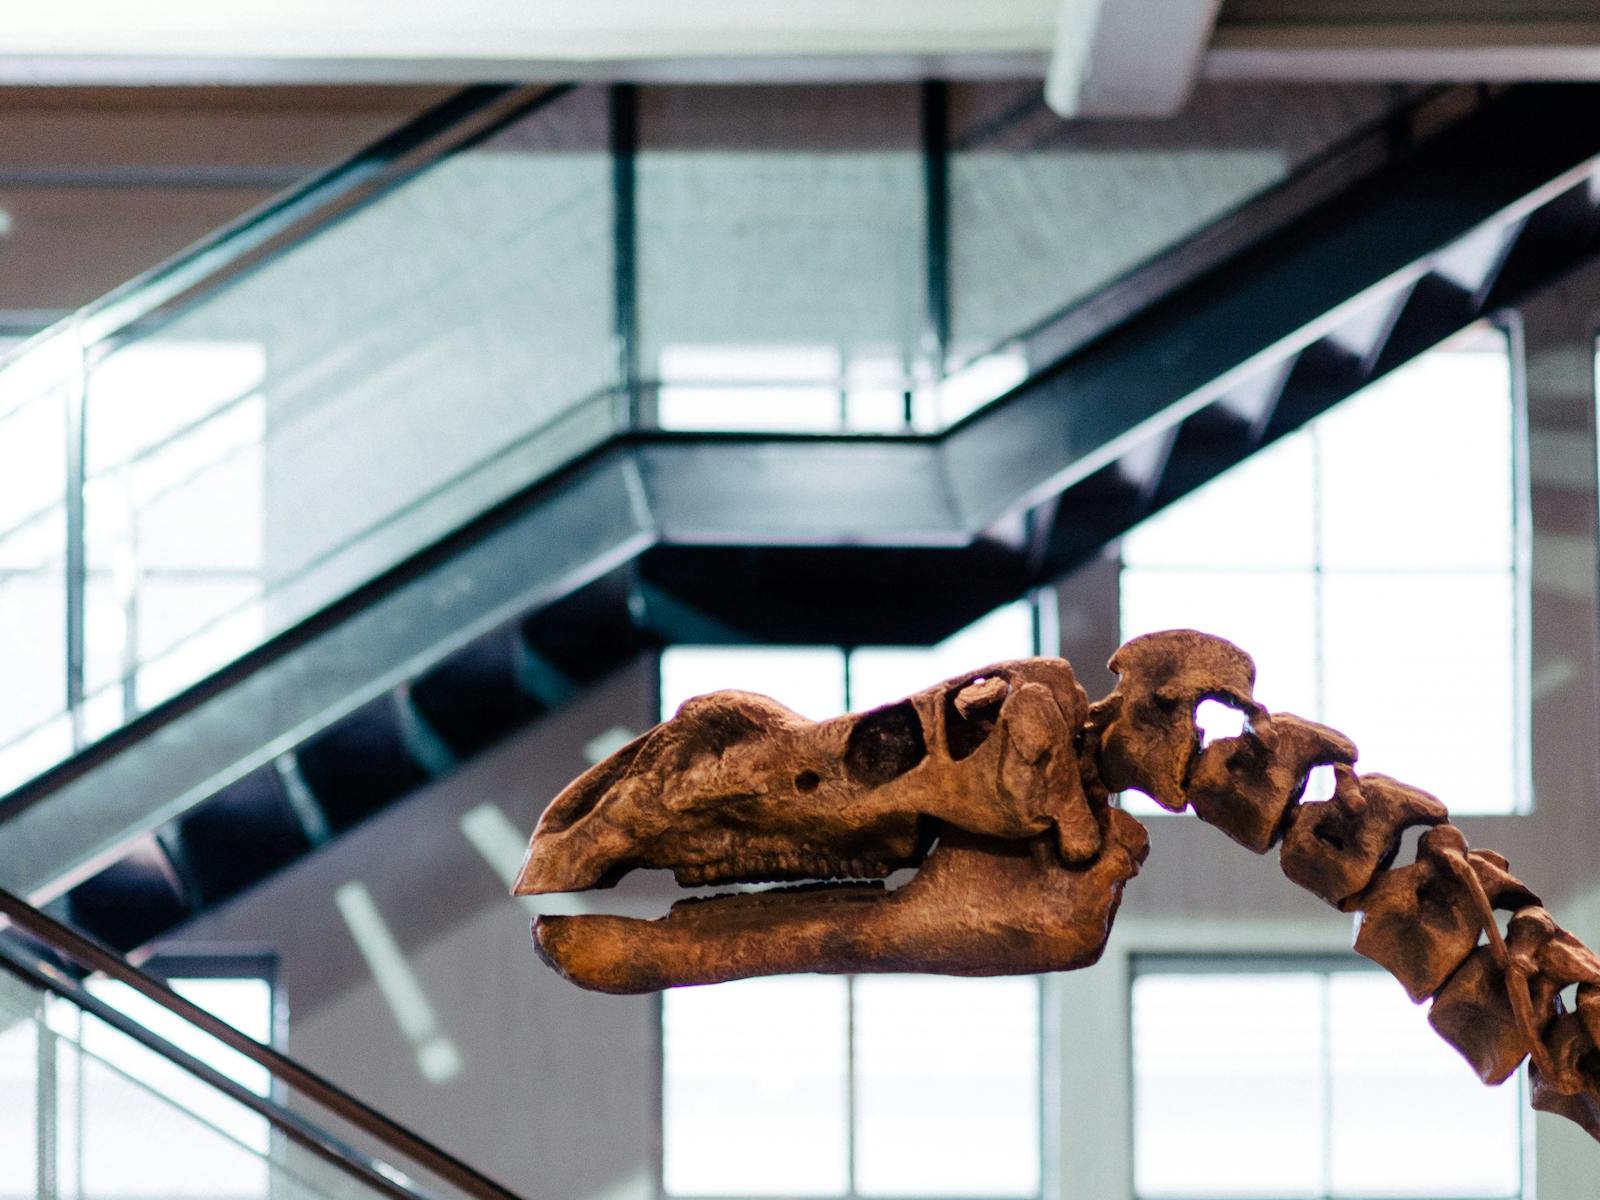 Dinosaur skeleton on display